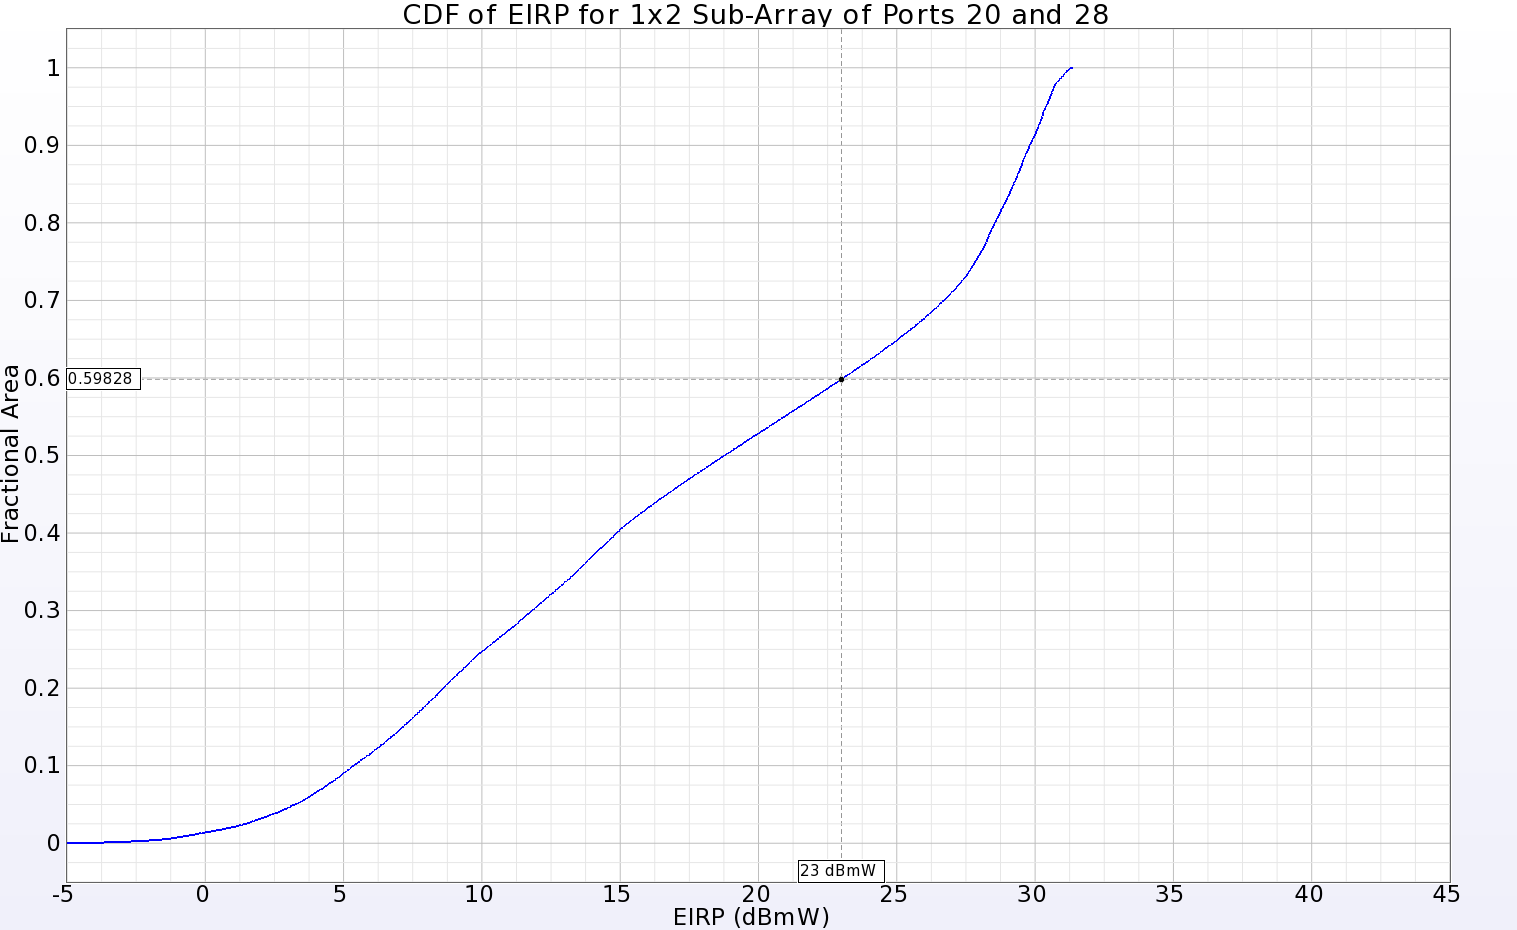 图 14：位于主阵列中心附近的 1x2 子阵列的 EIRP CDF 图，显示在输入功率为 23 dBmW 时，远区球面的 40.2% 为正增益。